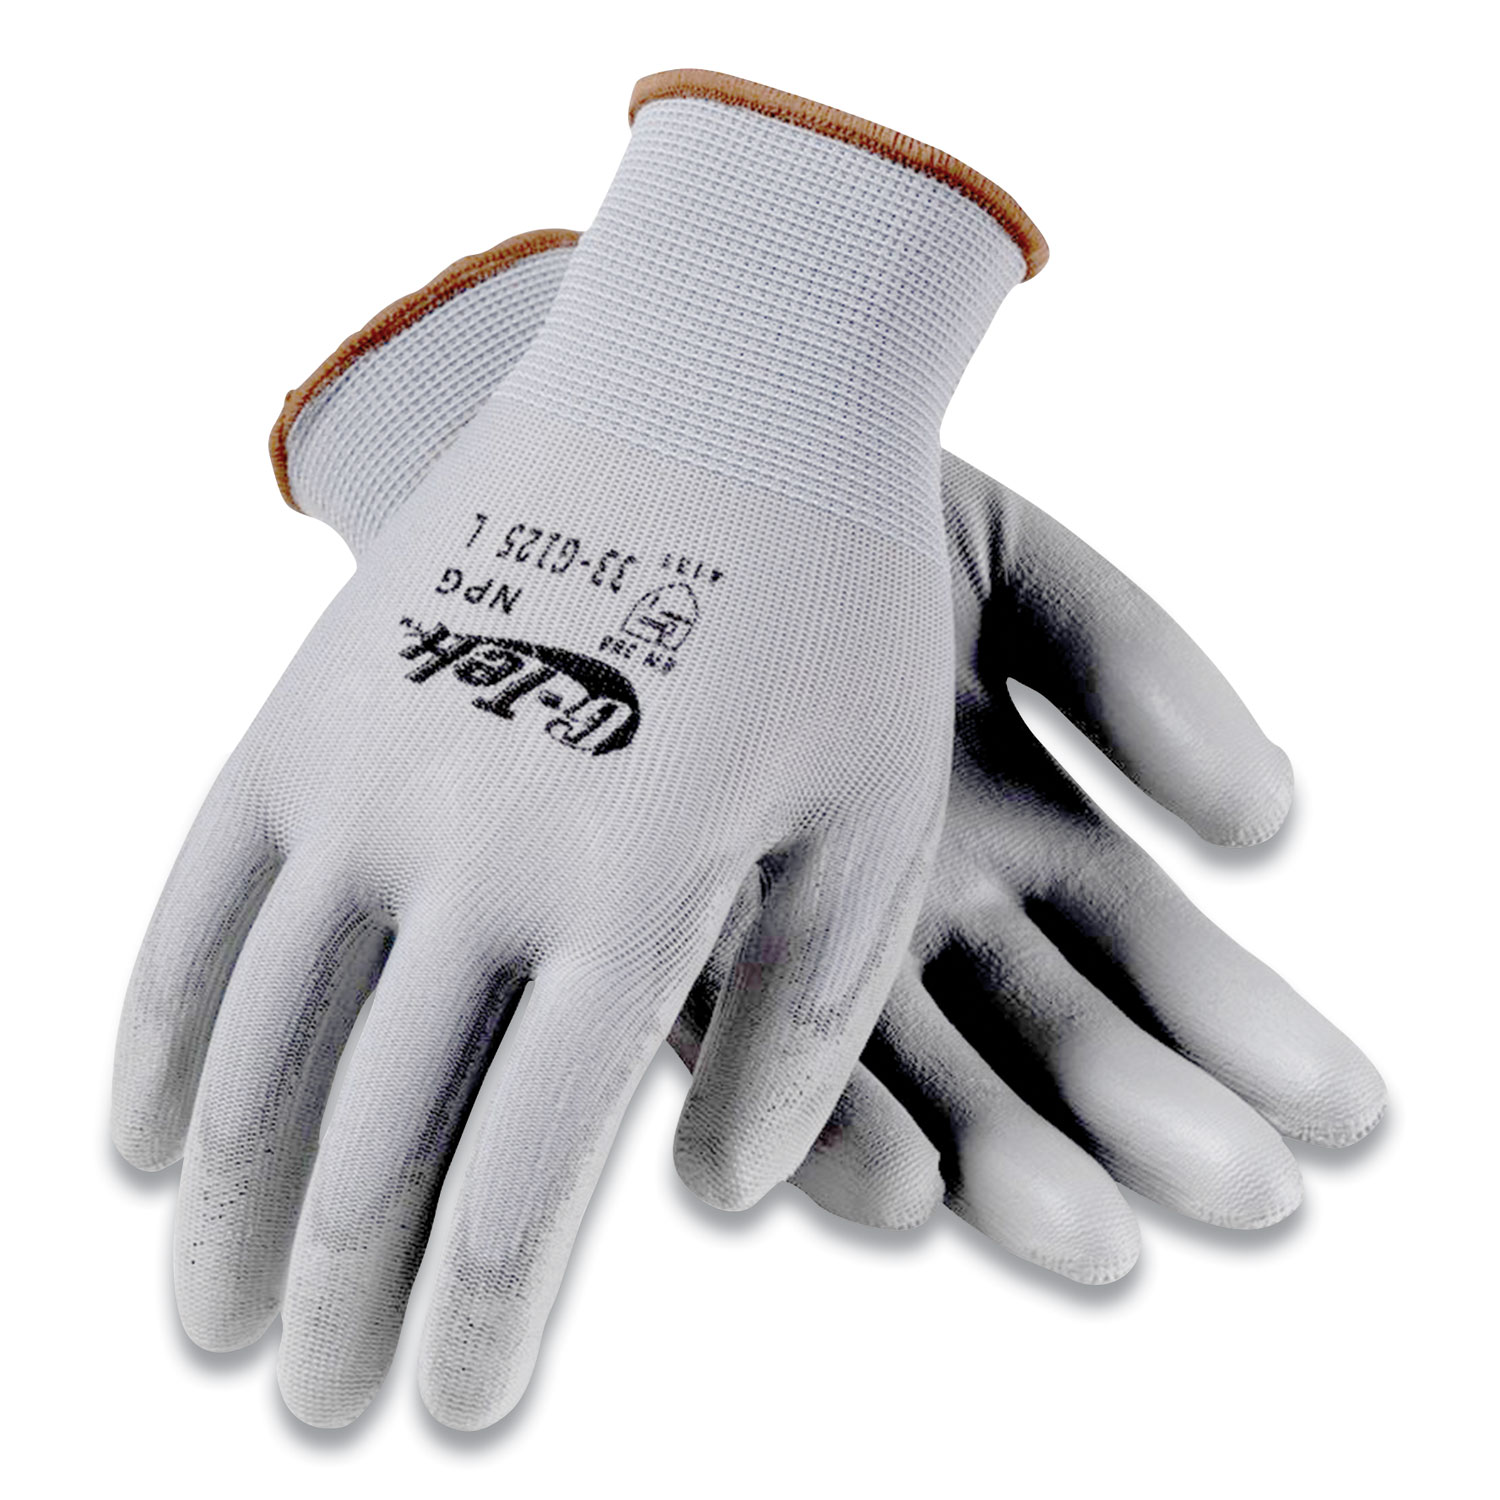 G-Tek® GP Polyurethane-Coated Nylon Gloves, Large, Gray, 12 Pairs